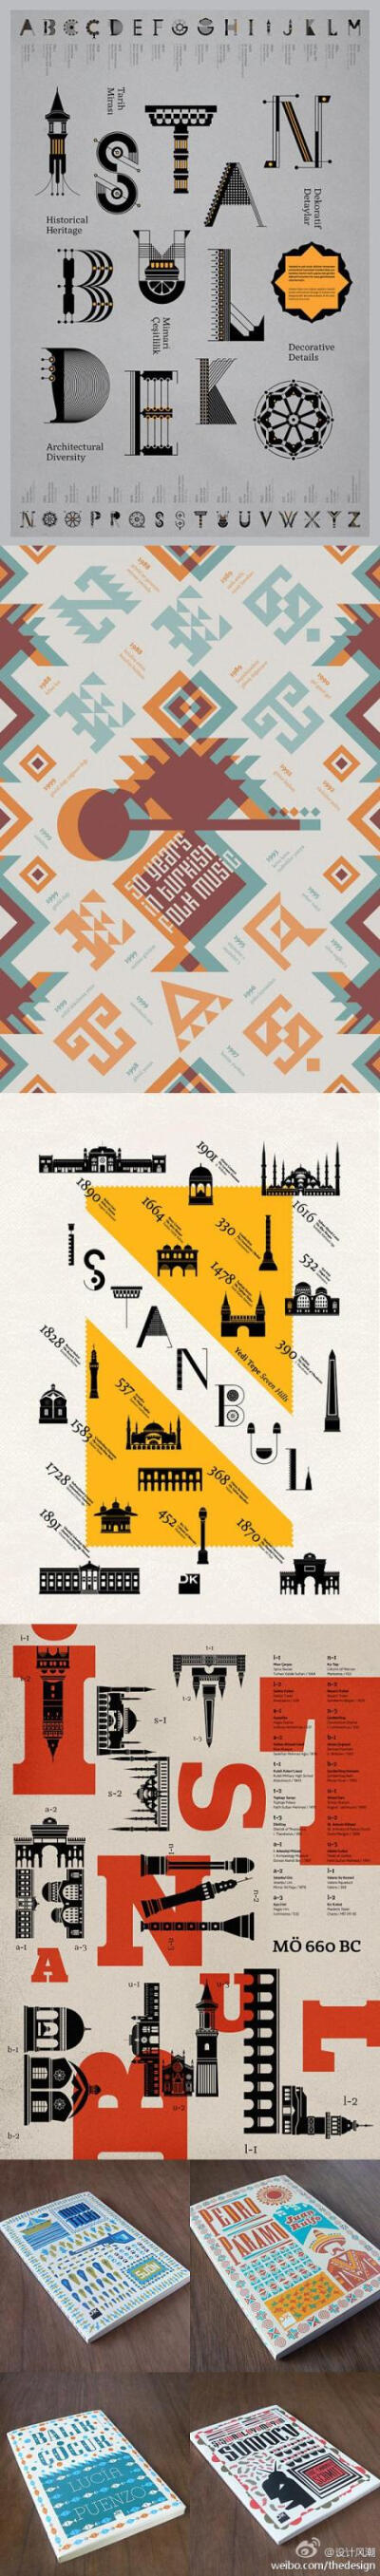 Geray Gencer，土耳其设计师，擅长海报设计及书籍装帧，常用繁复精细的字体设计。以下这幅名为《Istanbul Deko》，将伊斯坦布尔的一些著名建筑结构抽象化，组成字体，该作曾入选第五届中国国际海报双年展。